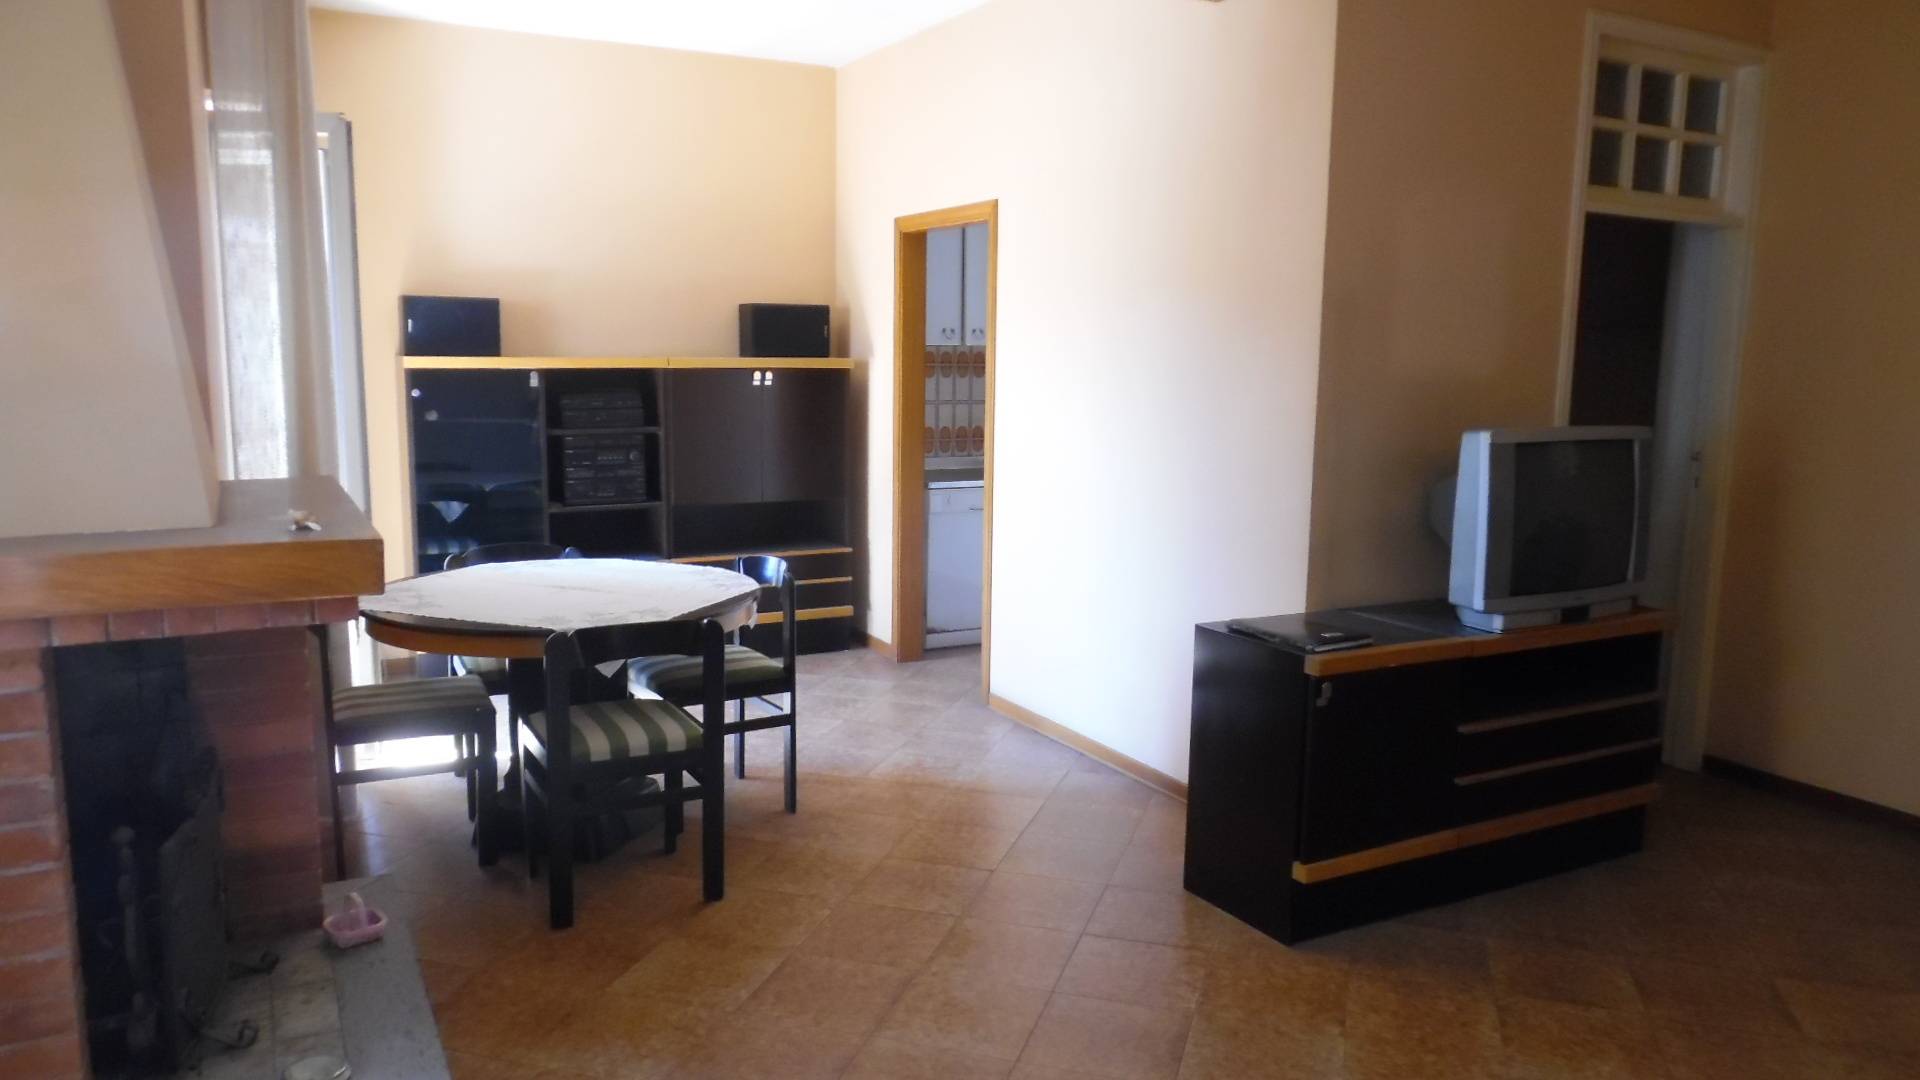 Appartamento in vendita a Martinsicuro, 4 locali, zona Località: Centro, prezzo € 135.000 | PortaleAgenzieImmobiliari.it